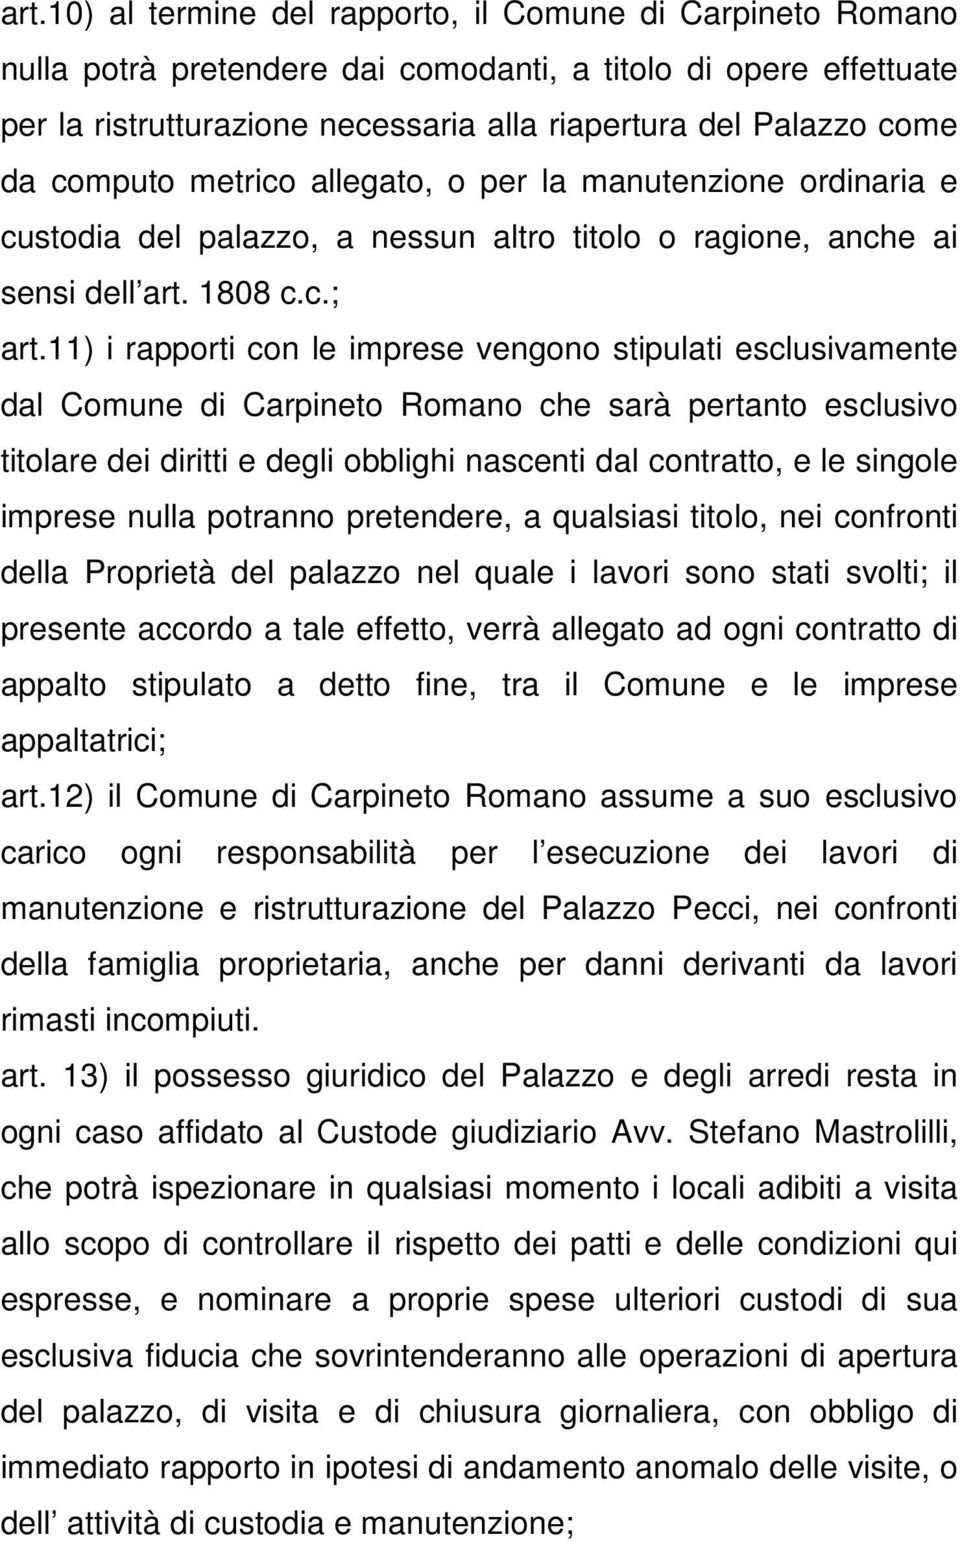 11) i rapporti con le imprese vengono stipulati esclusivamente dal Comune di Carpineto Romano che sarà pertanto esclusivo titolare dei diritti e degli obblighi nascenti dal contratto, e le singole